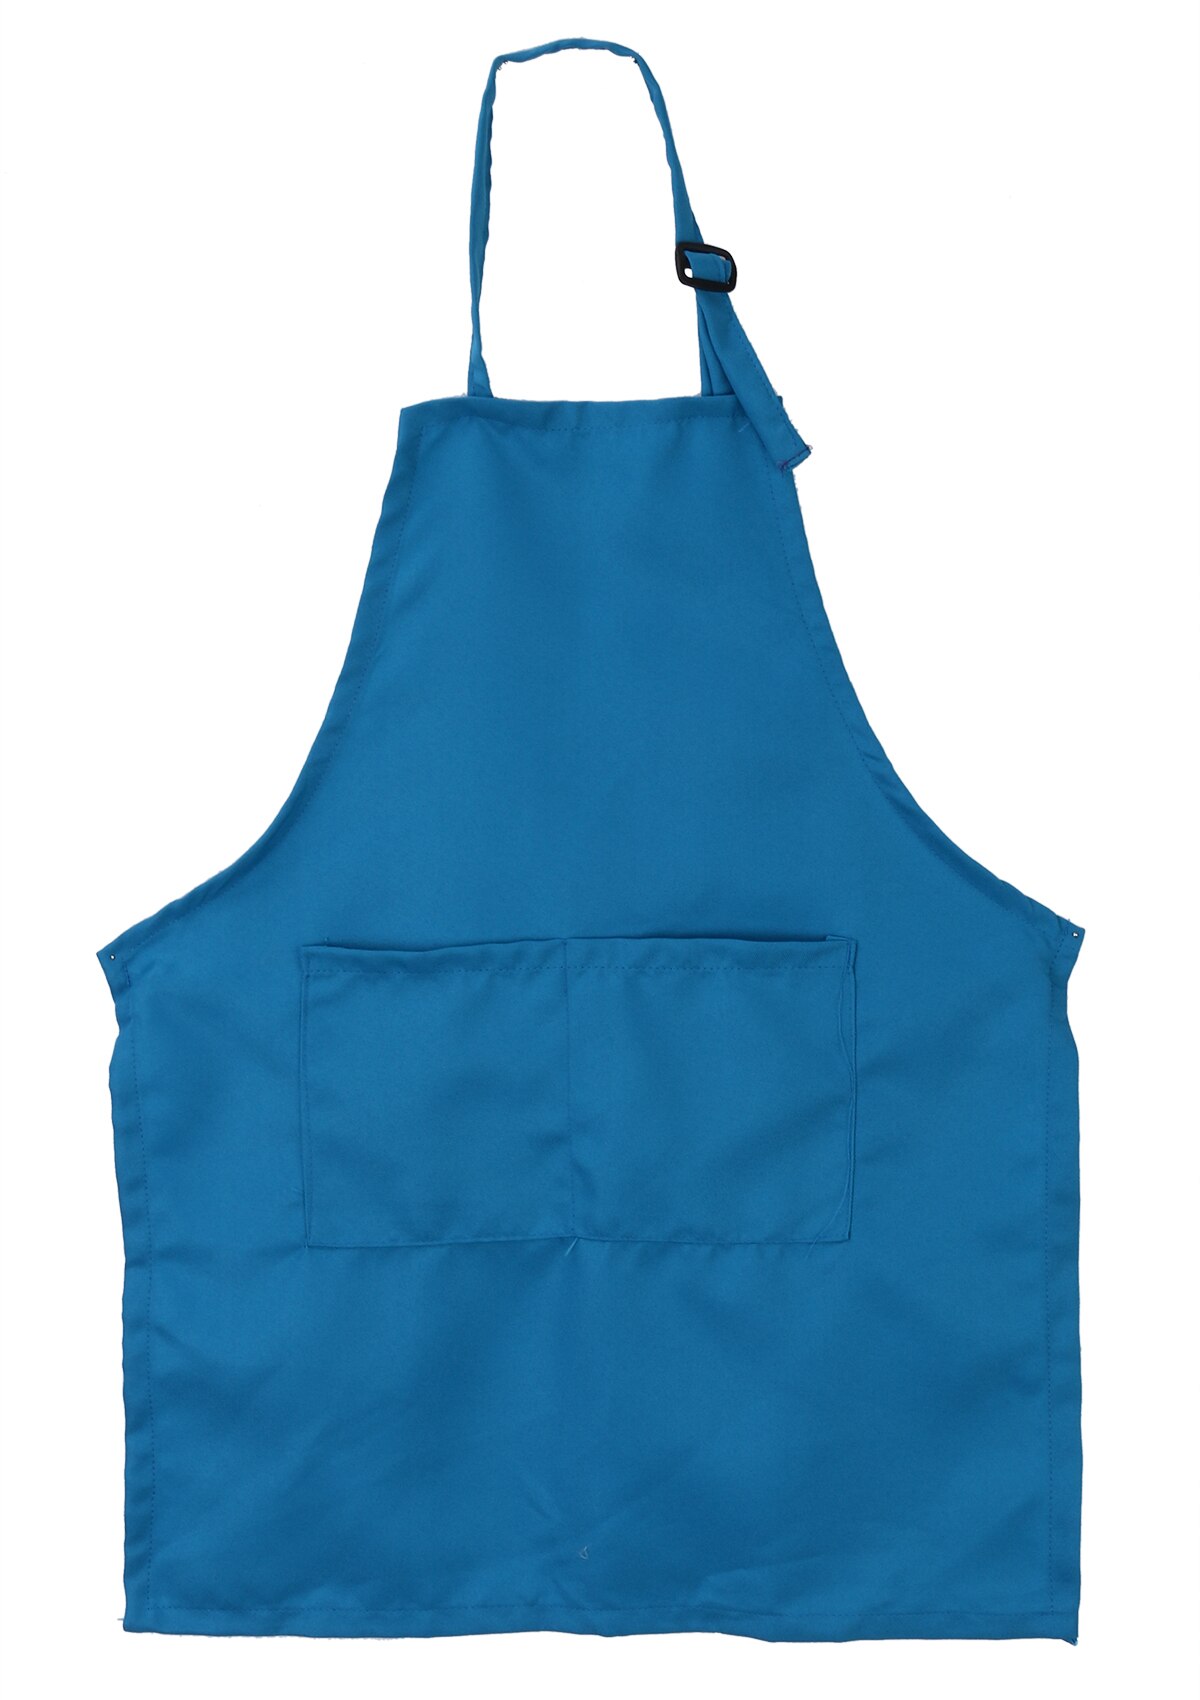 Børn børn fast almindeligt forklæde køkken madlavning bagning maleri madlavning kunst bib forklæde: Blå